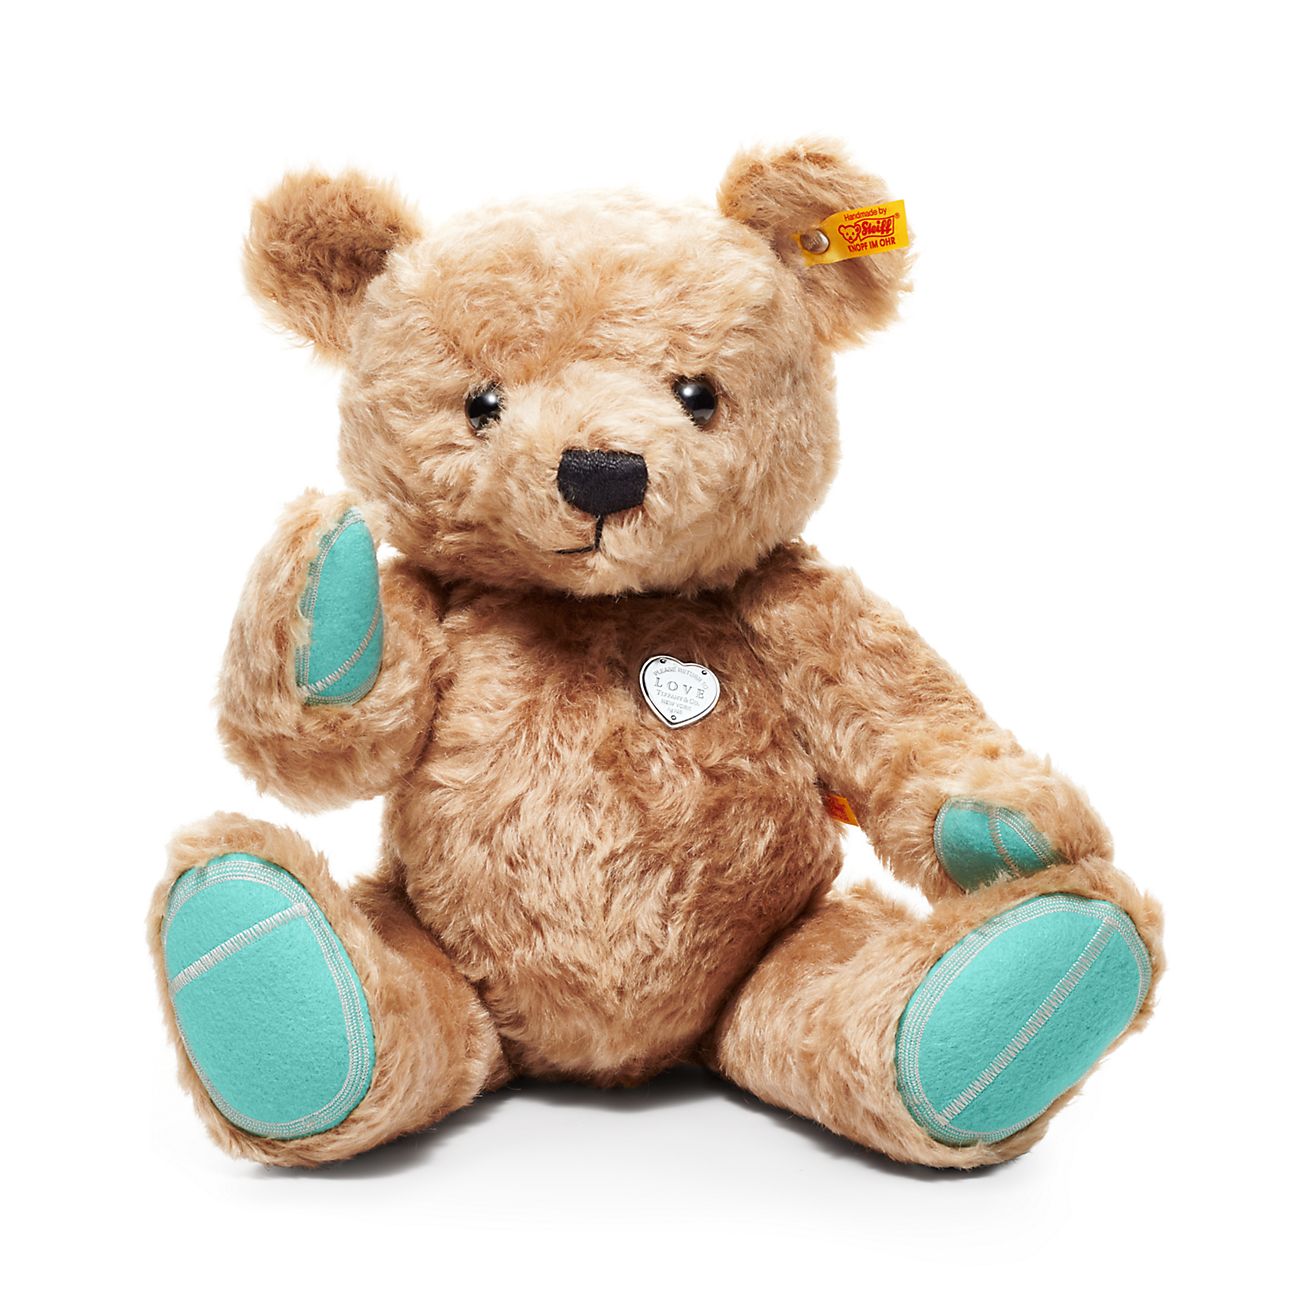 turquoise teddy bear